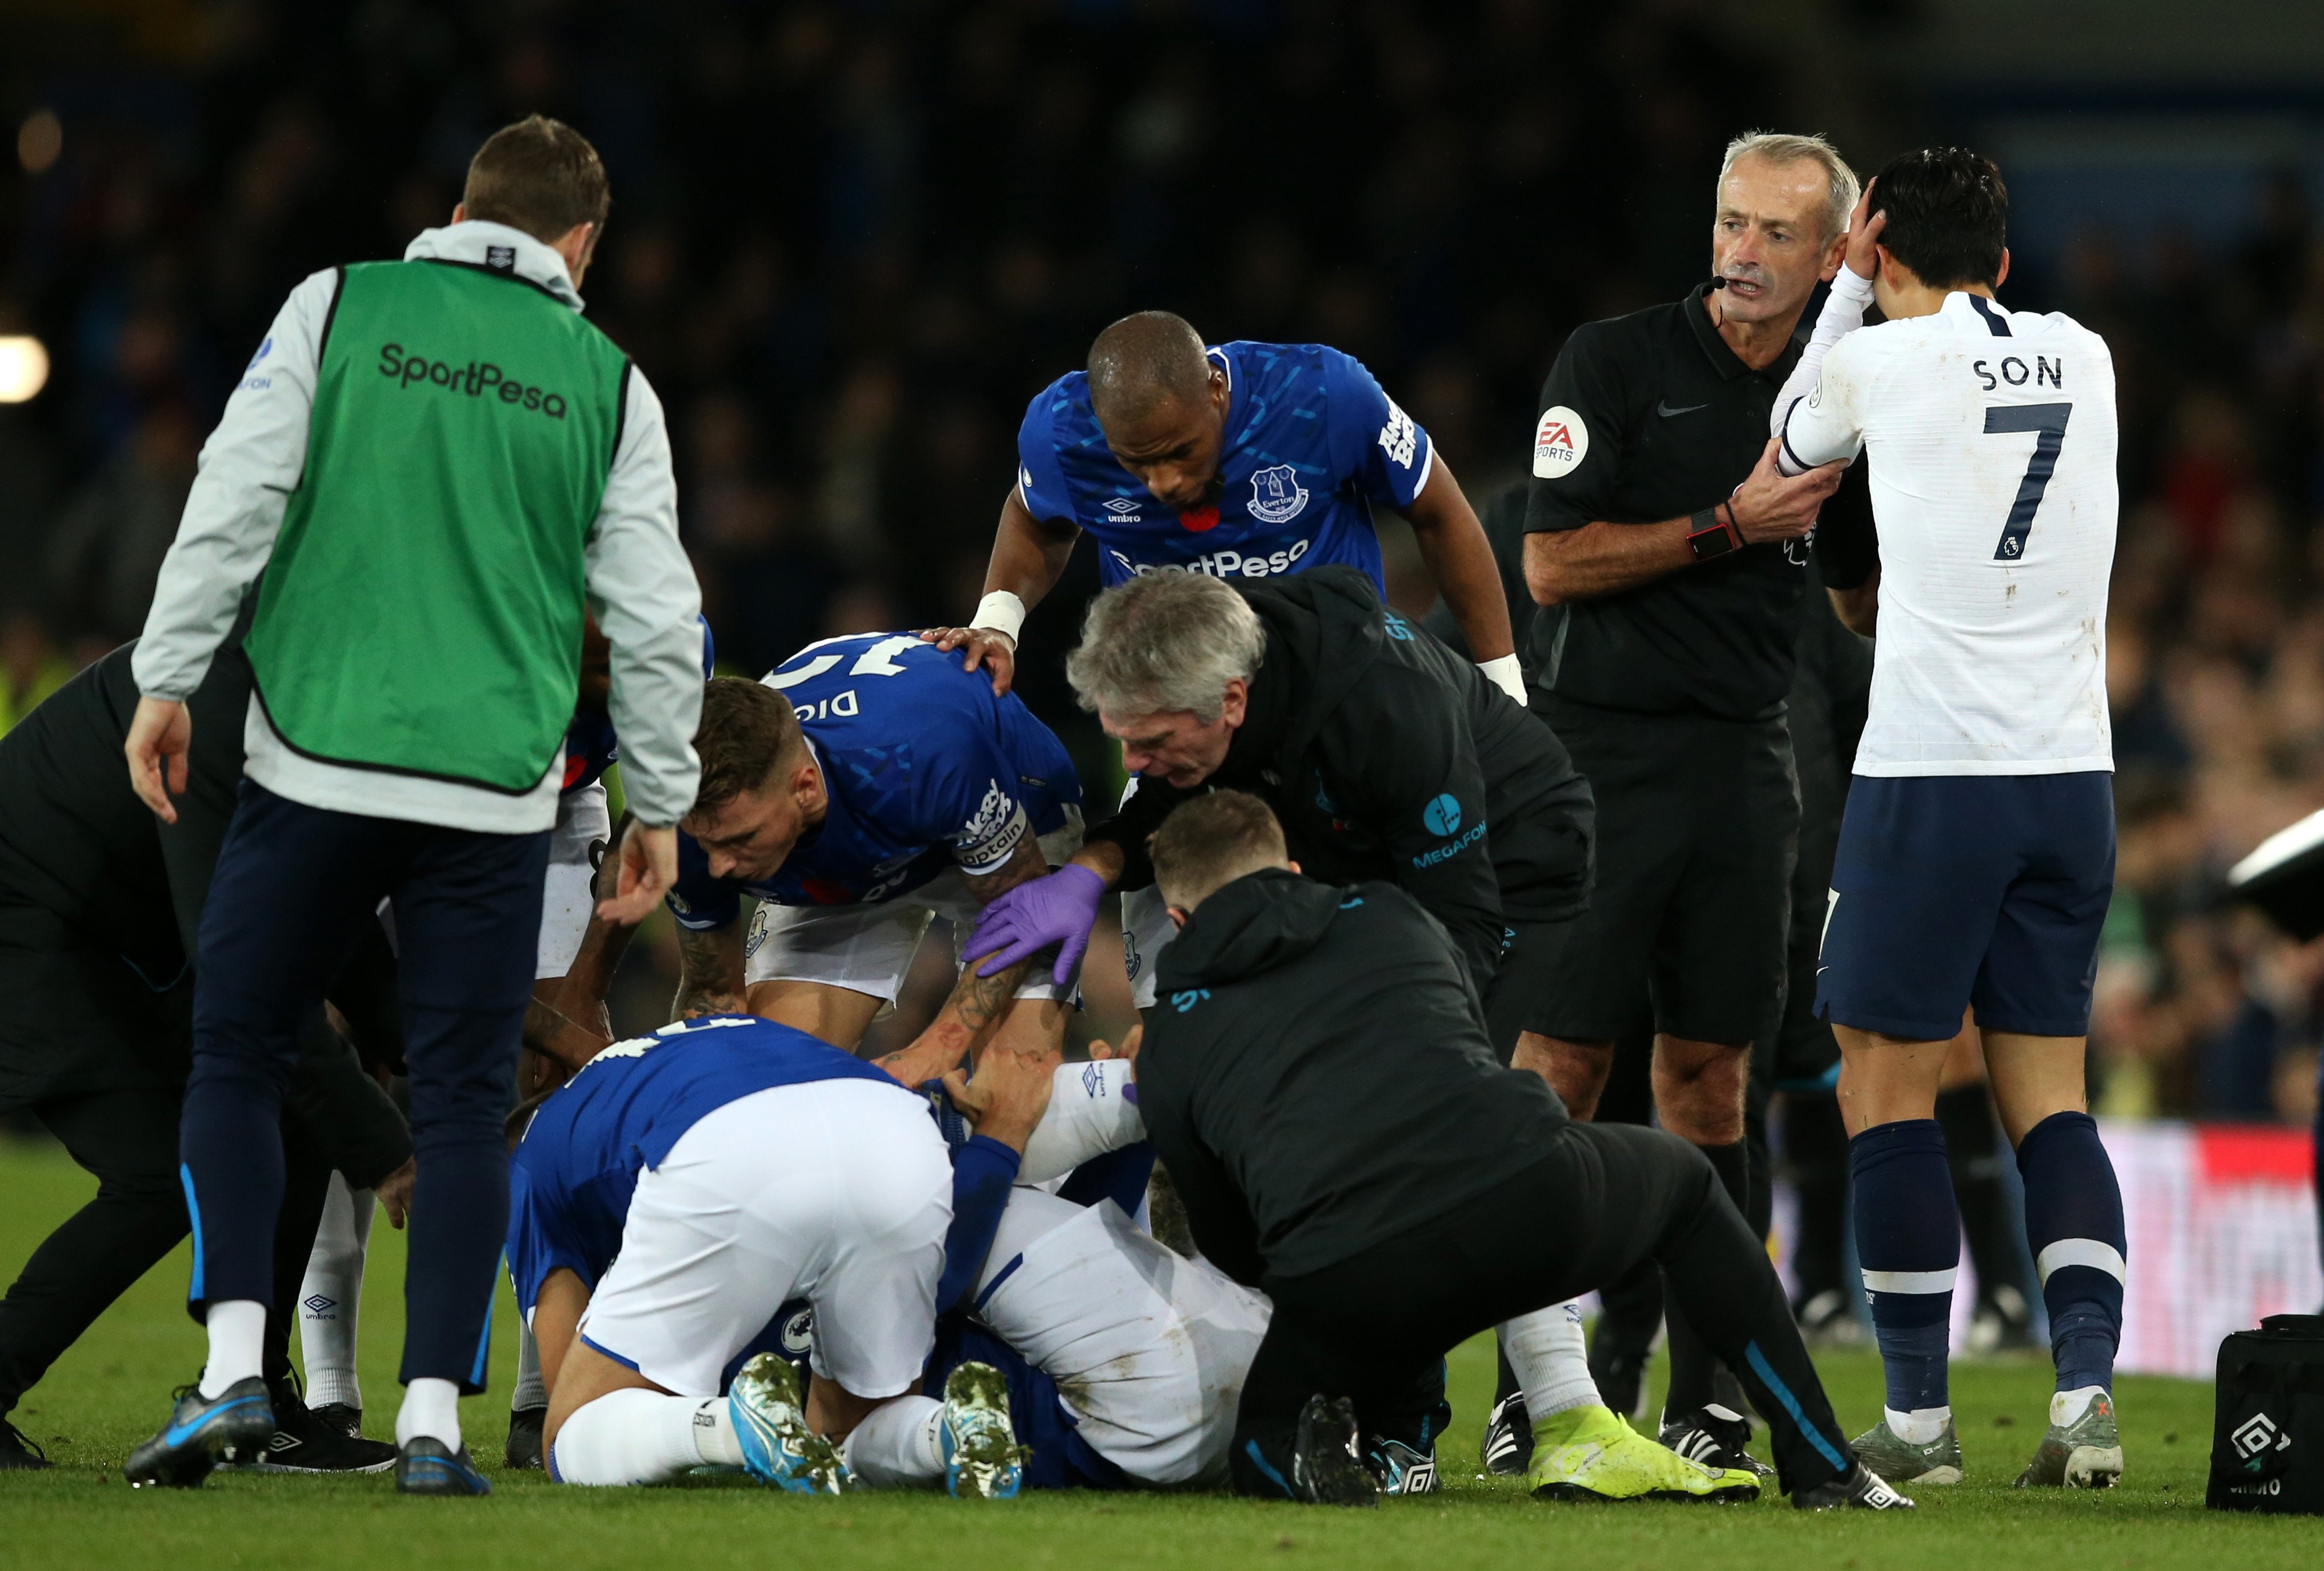 La escalofriante lesión de André Gomes que paralizó la Premier League